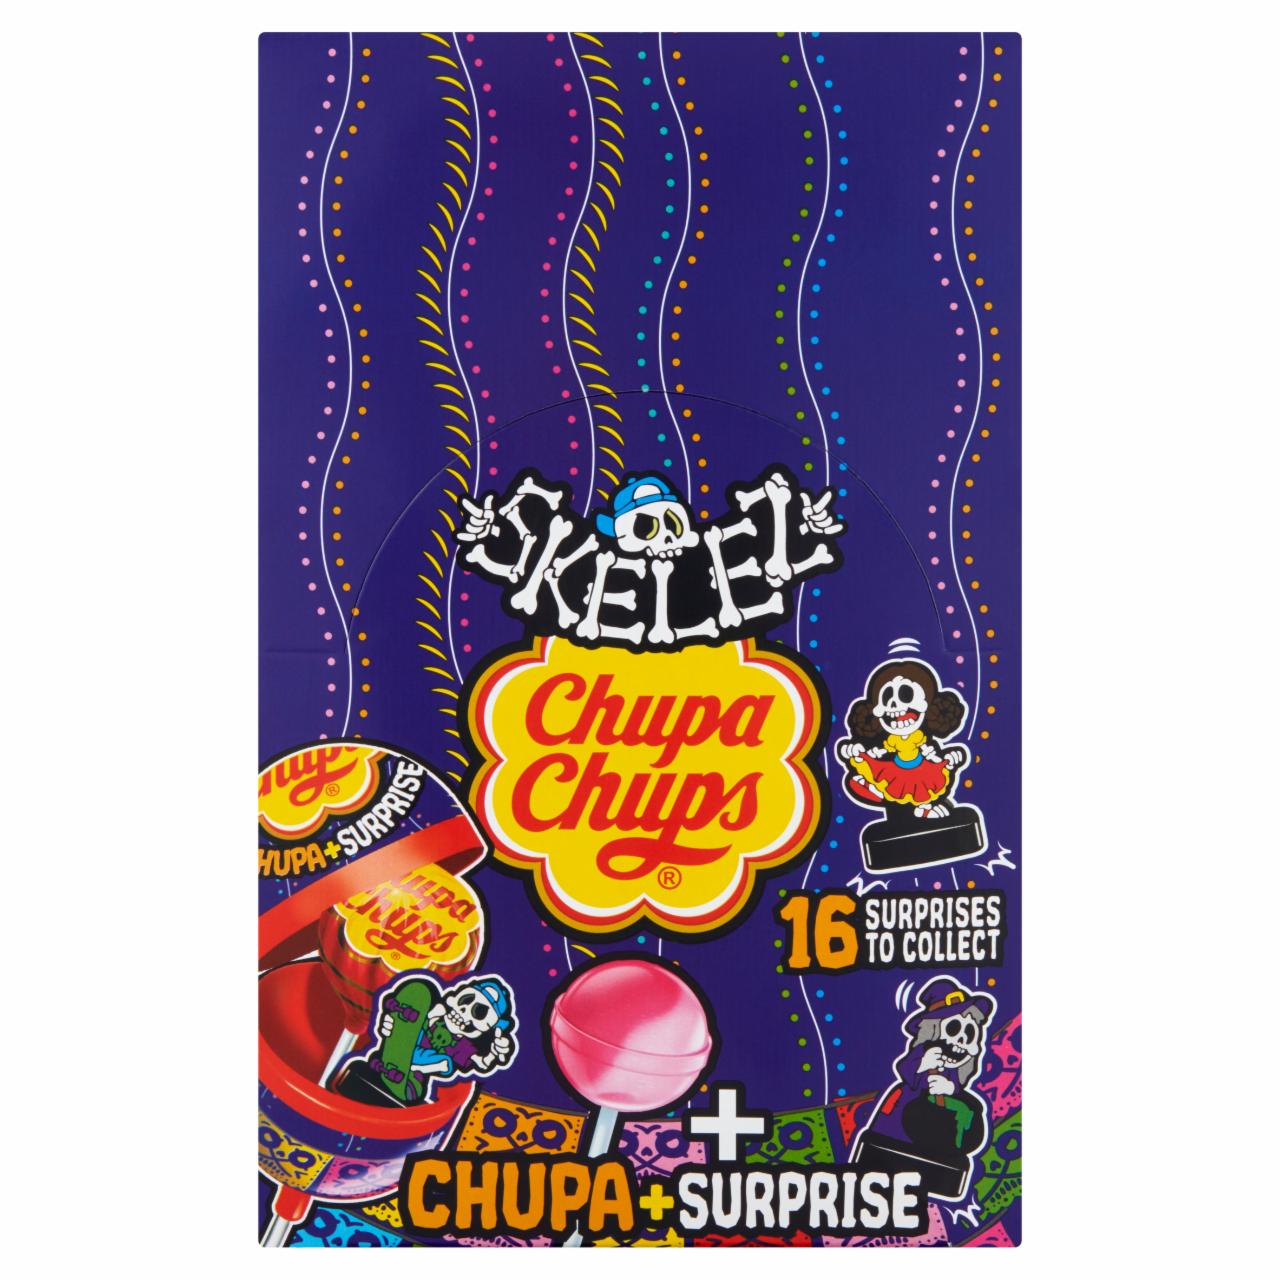 Zdjęcia - Chupa Chups Grippy Heroes Lizaki o smaku truskawkowym 192 g (16 x 12 g)